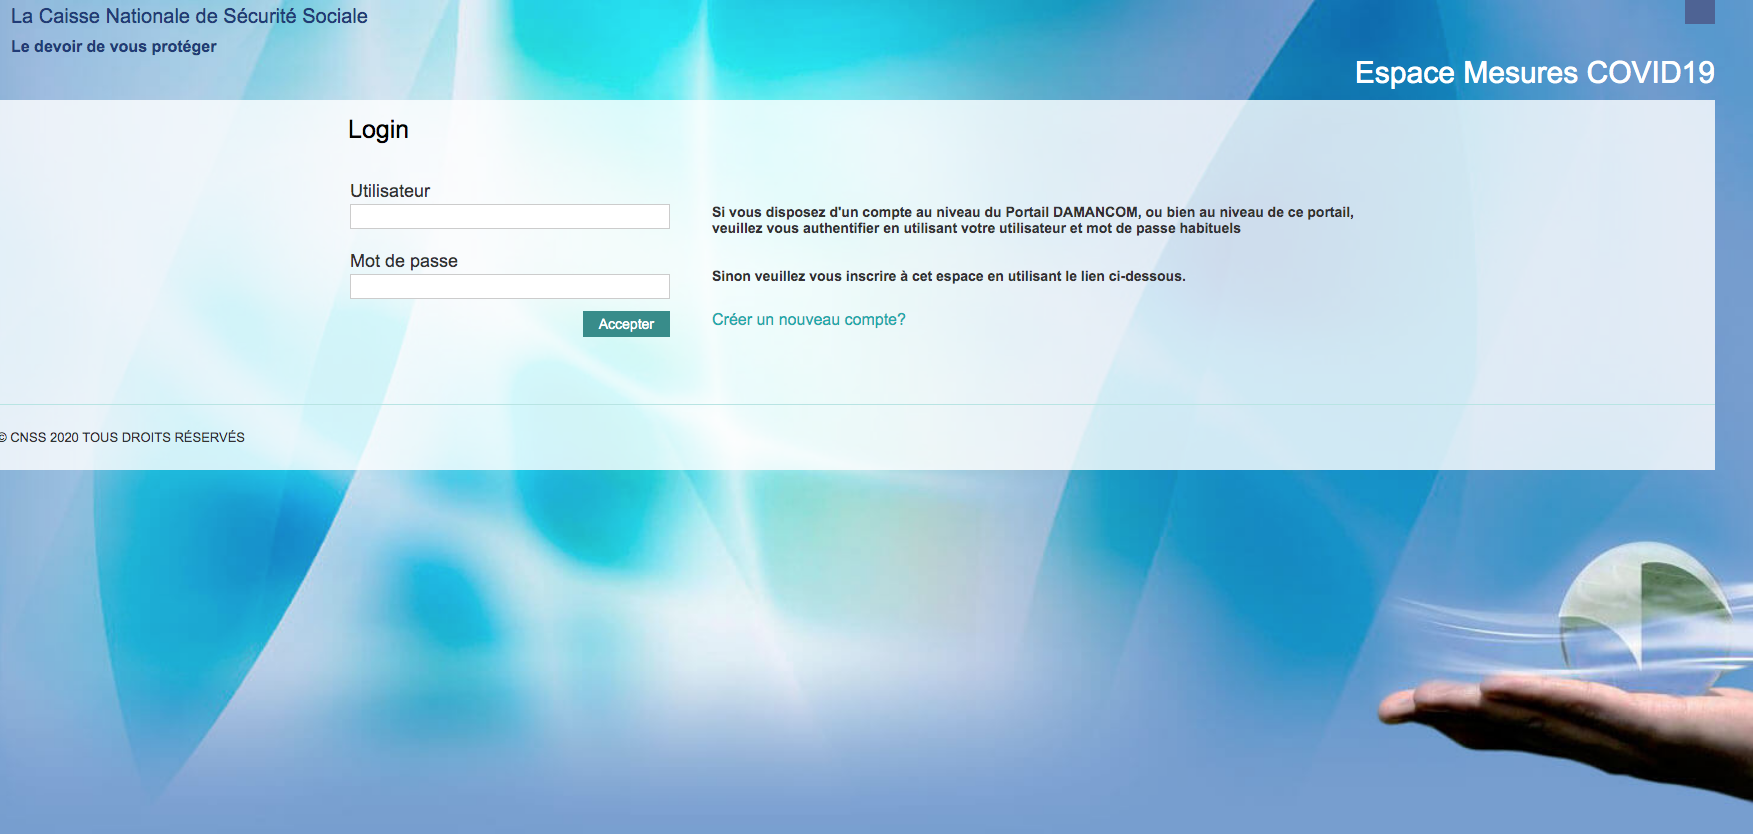 La CNSS met en ligne une nouvelle version du portail «covid19.cnss.ma»